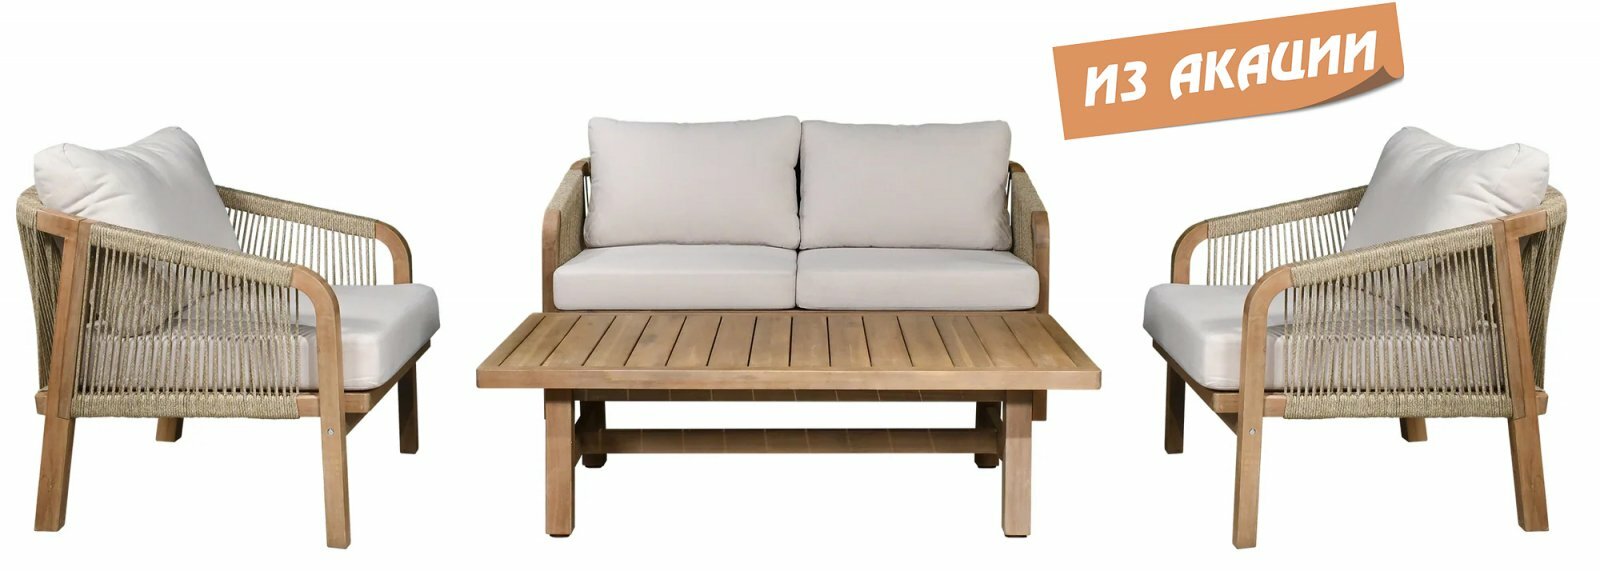 Комплект элитной деревянной лаунж-мебели Tagliamento Ravona KD акация 4 персоны